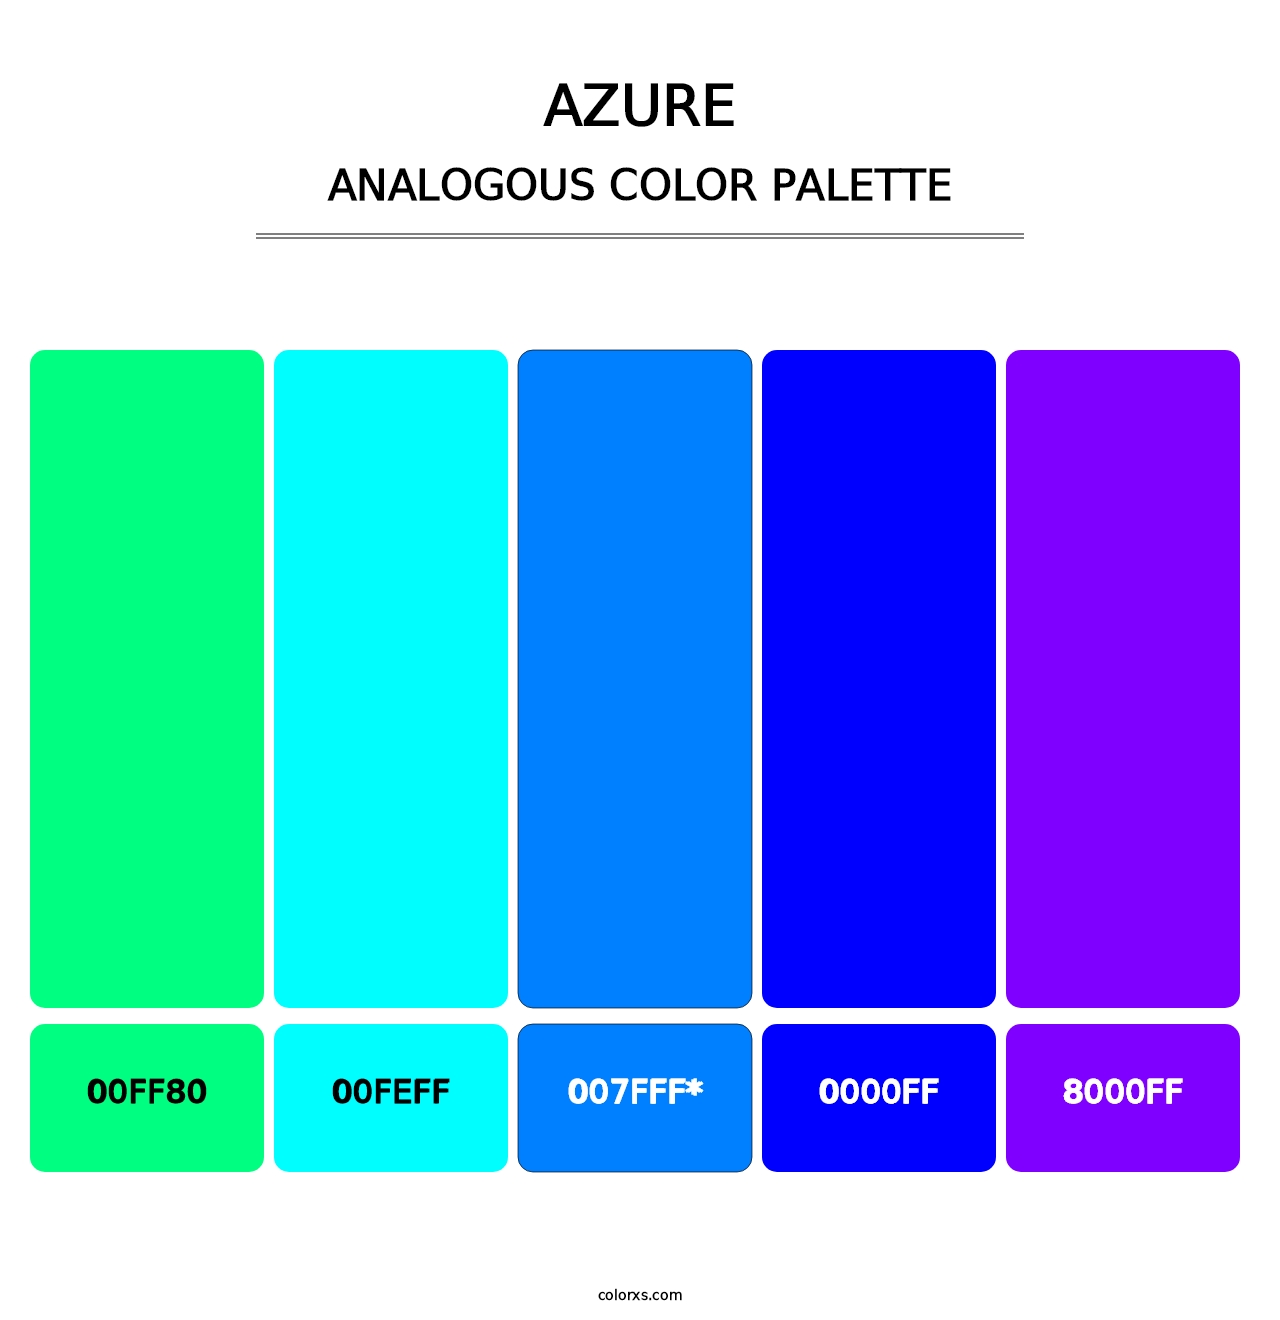 Azure - Analogous Color Palette